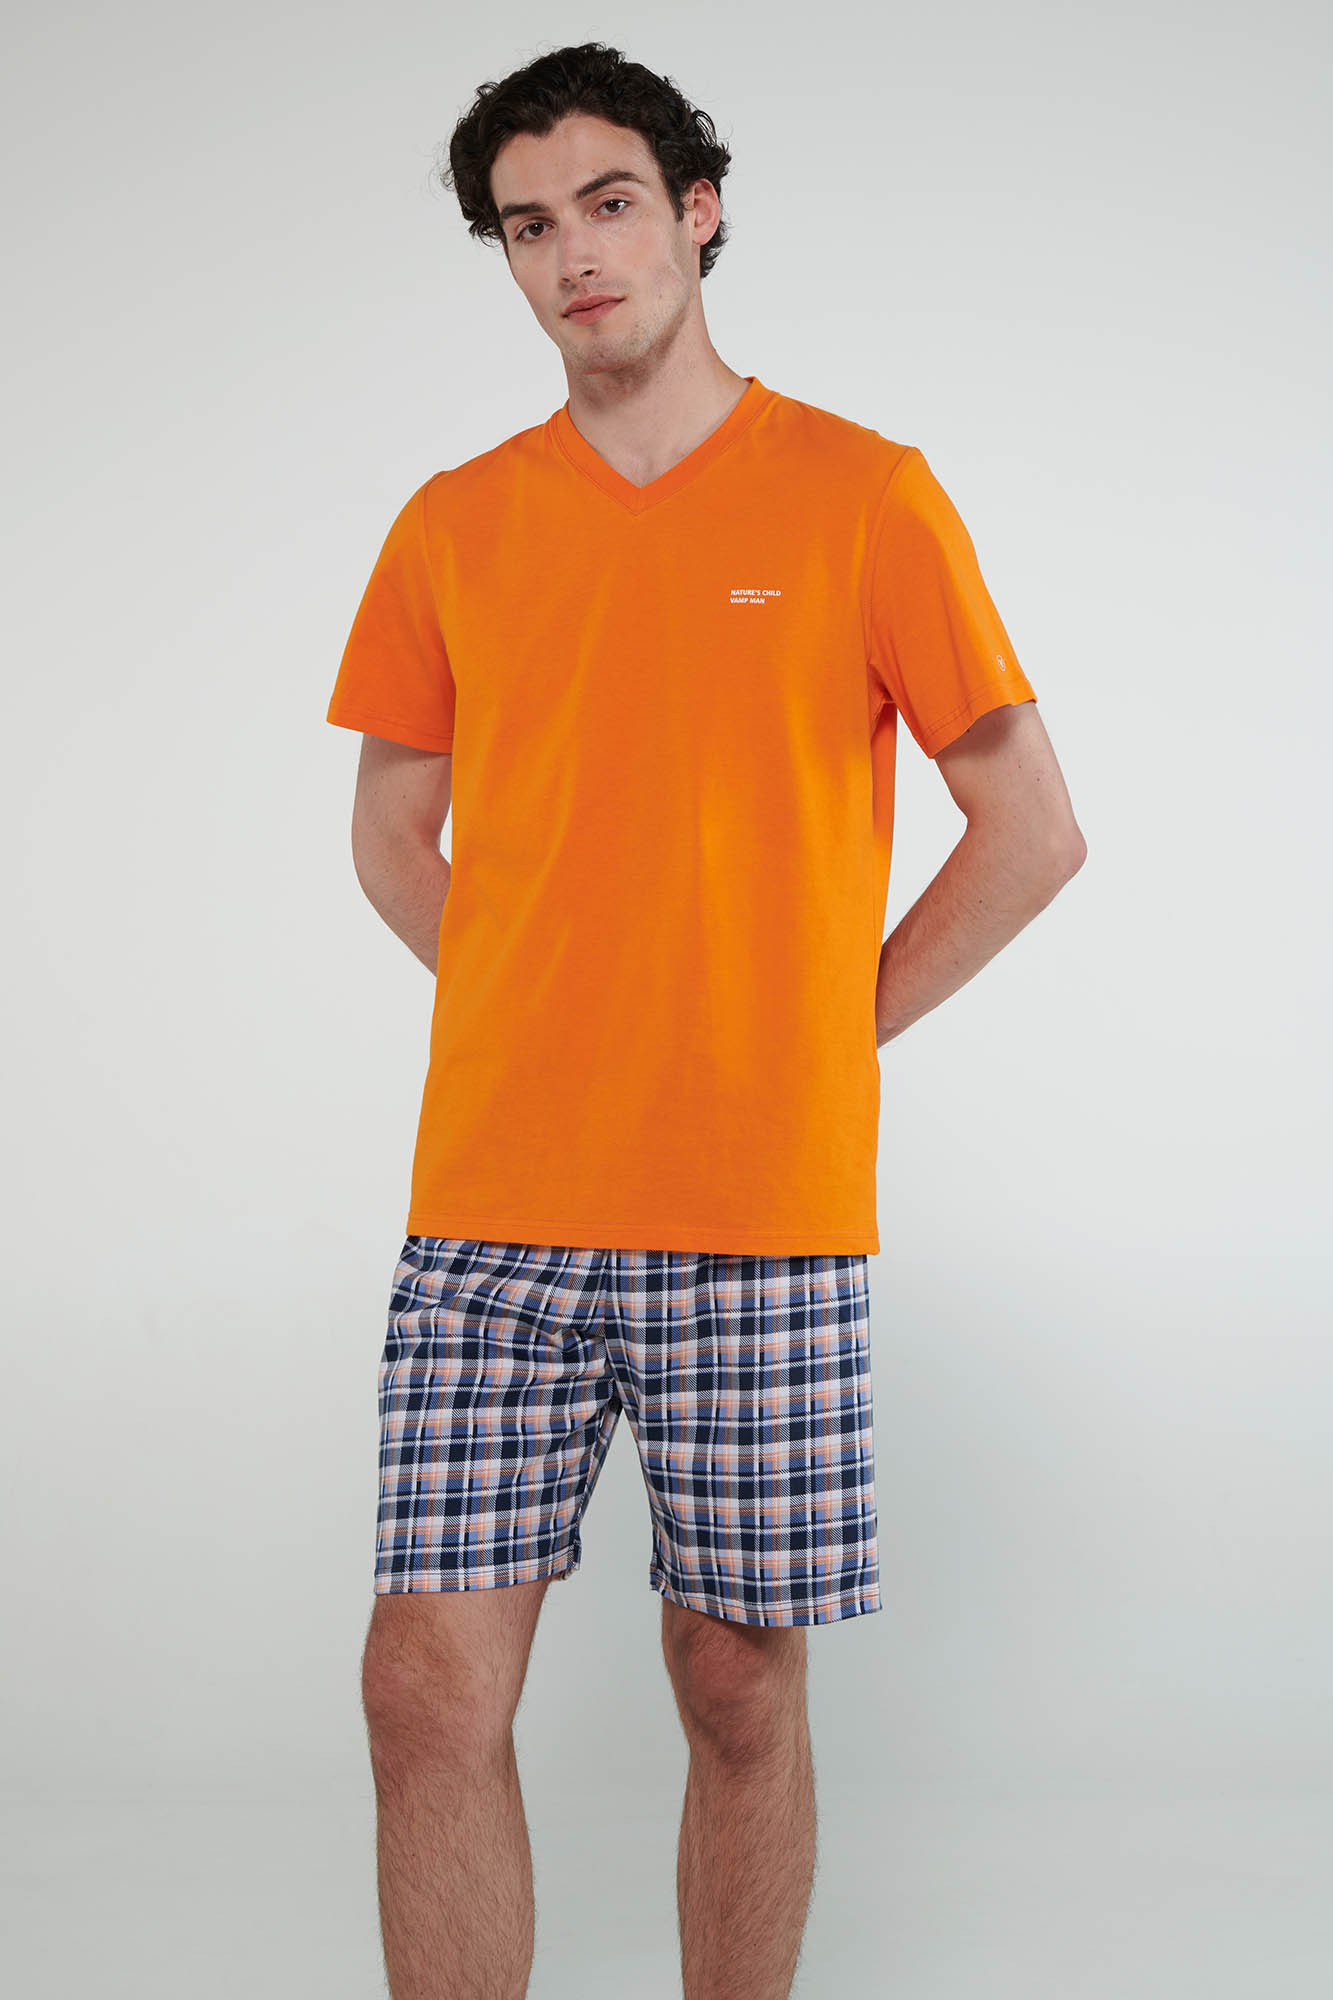 Vamp - Pyžamo s krátkými rukávy 20620 - Vamp orange russet L